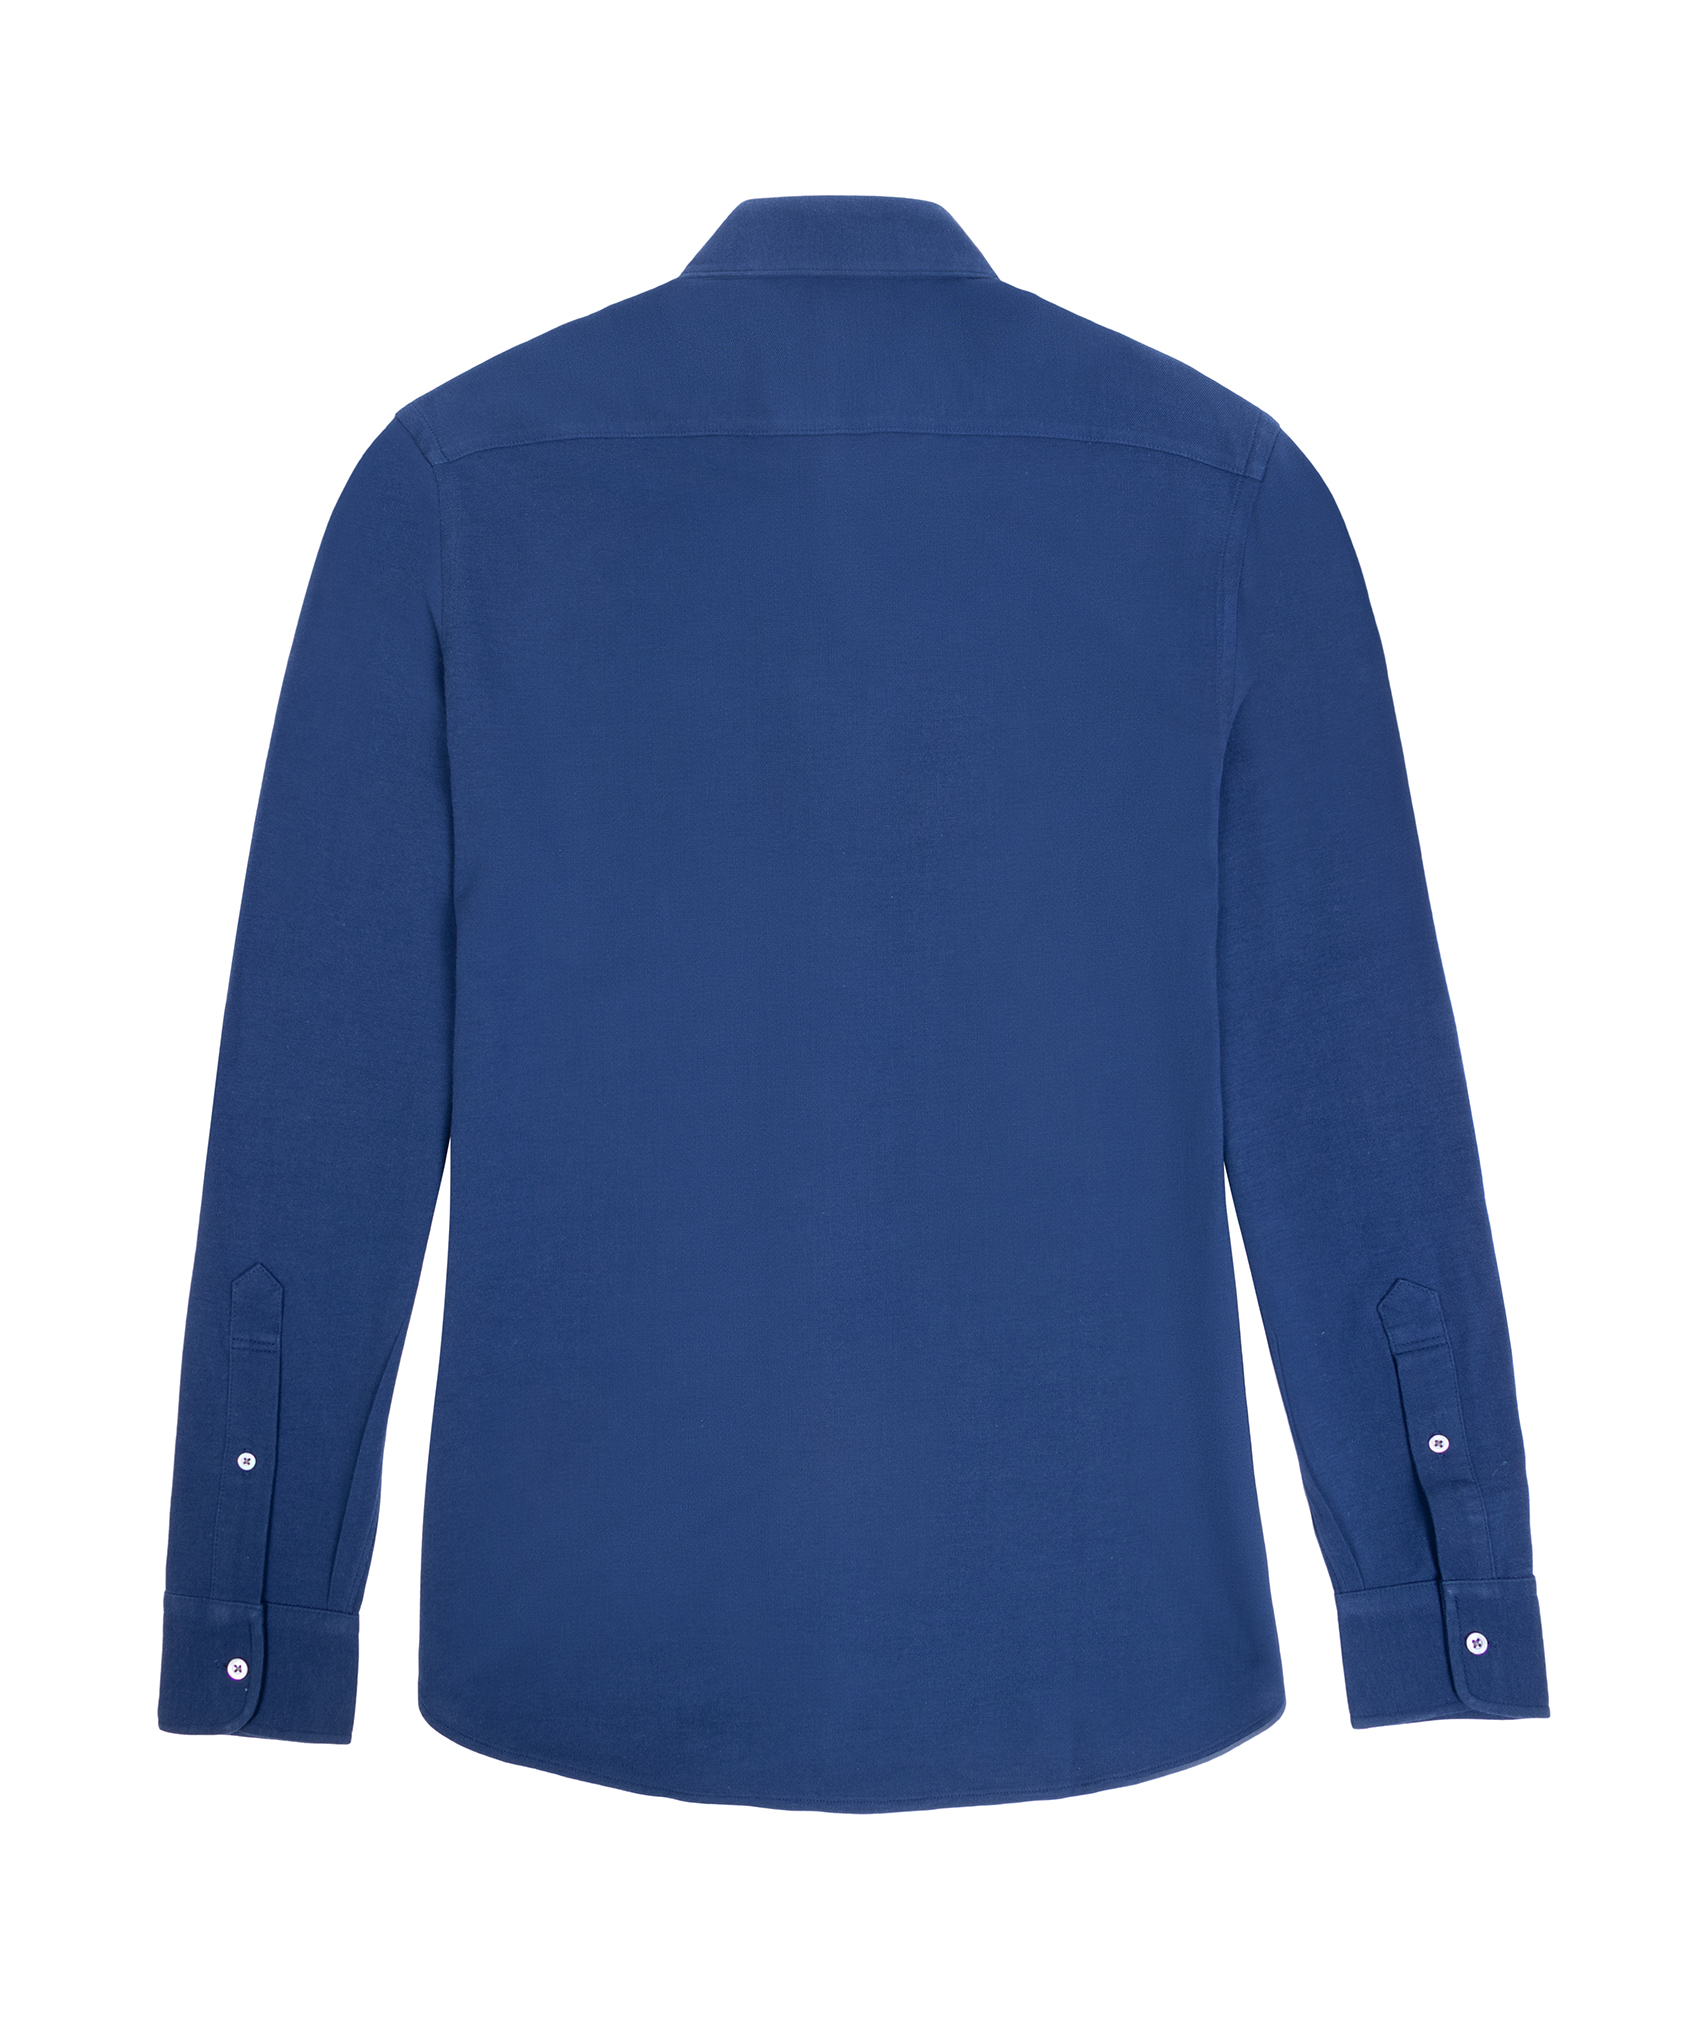 Cutaway Pique Knit Shirt – Dark Blue - Knit Shirt Co.